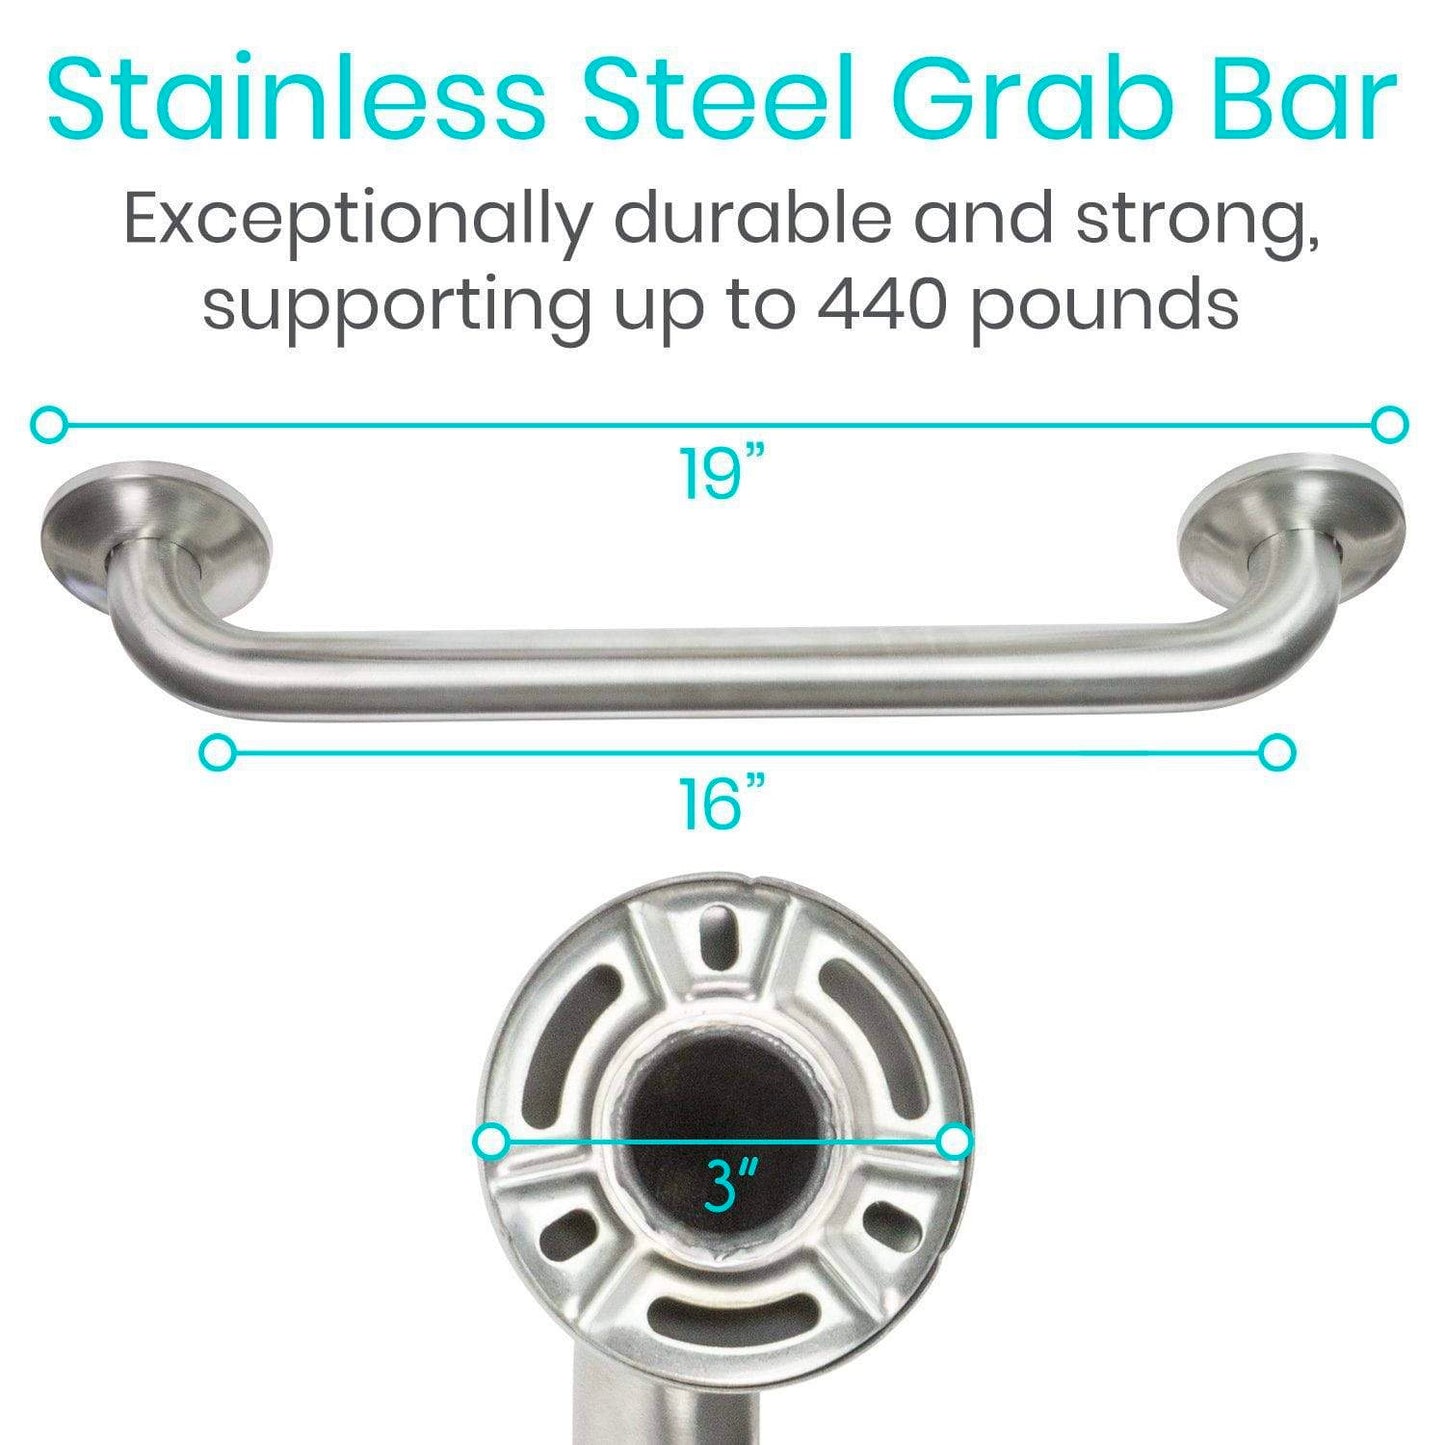 Silver grab bar measurements